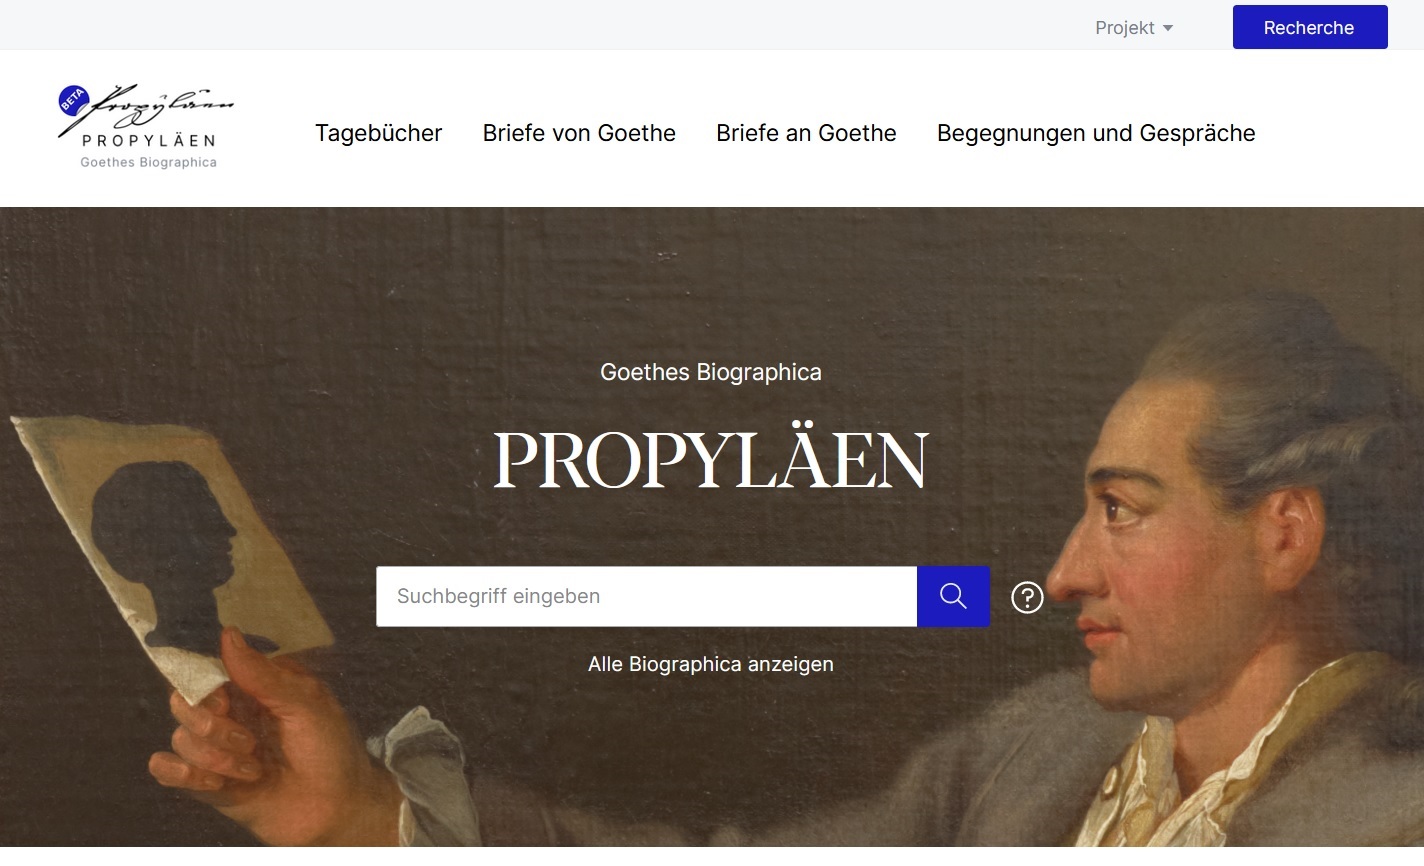 Startseite der Plattform Propyläen